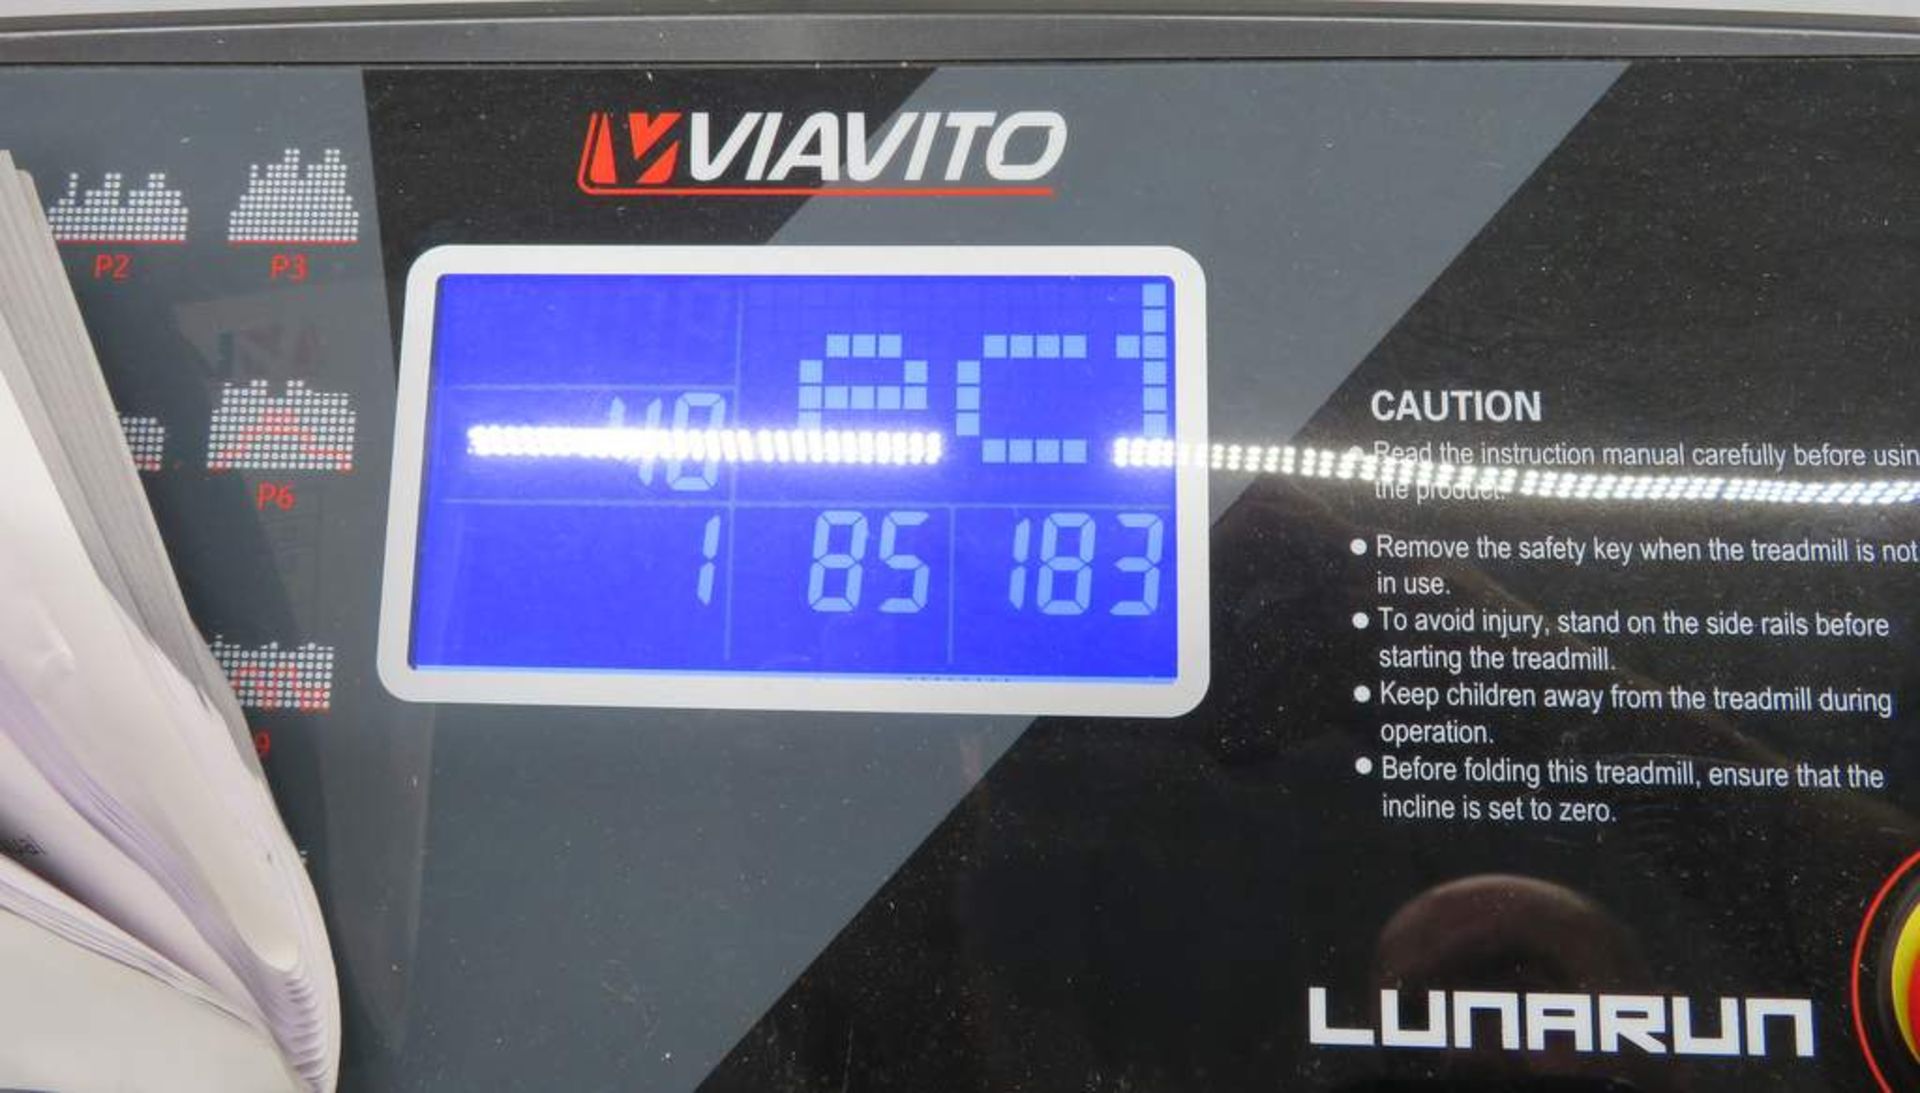 Viavito Luna Run Treadmill - Foldable. - Image 6 of 6